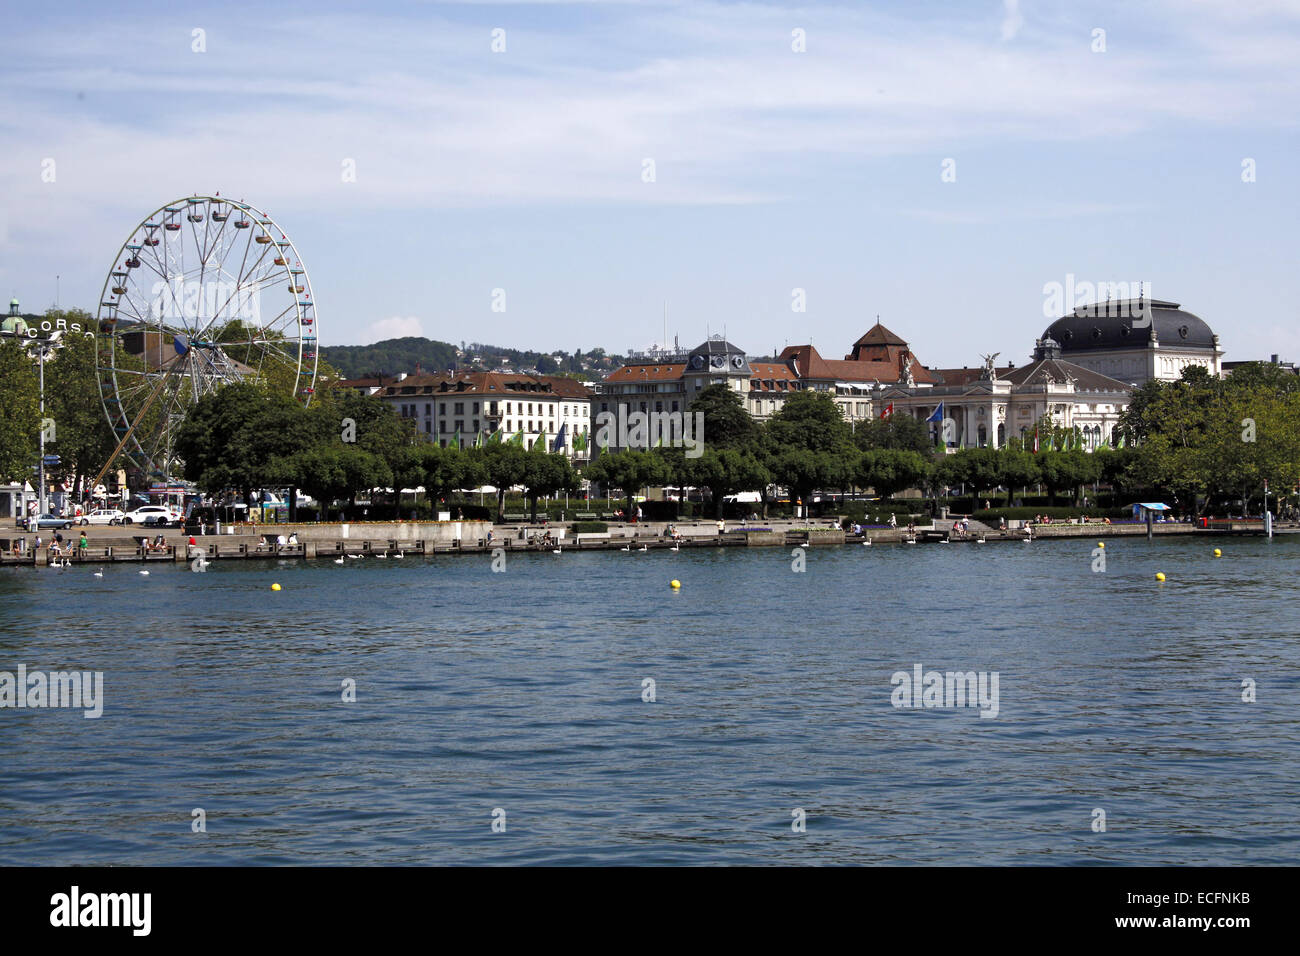 Picturesque urban view with ferris wheel, Zurich, Switzerland Stock Photo